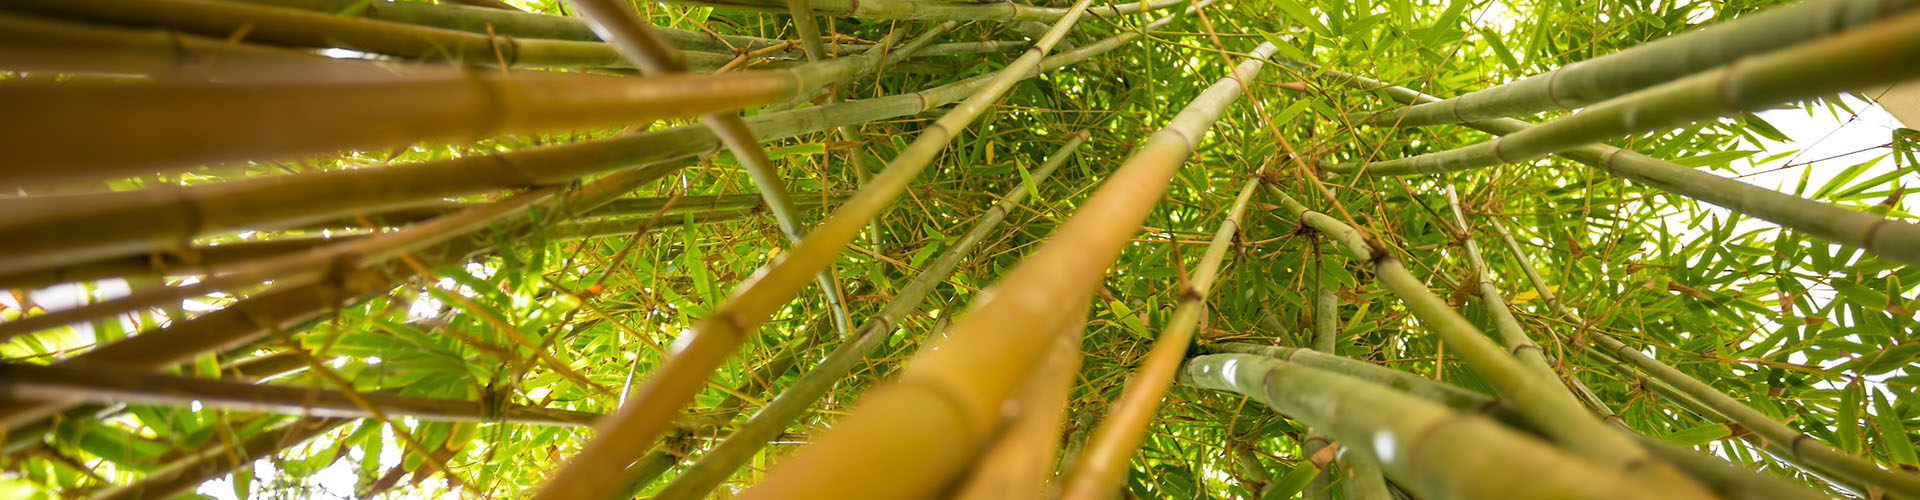 Bamboo in Florida Tech Botanical Gardens